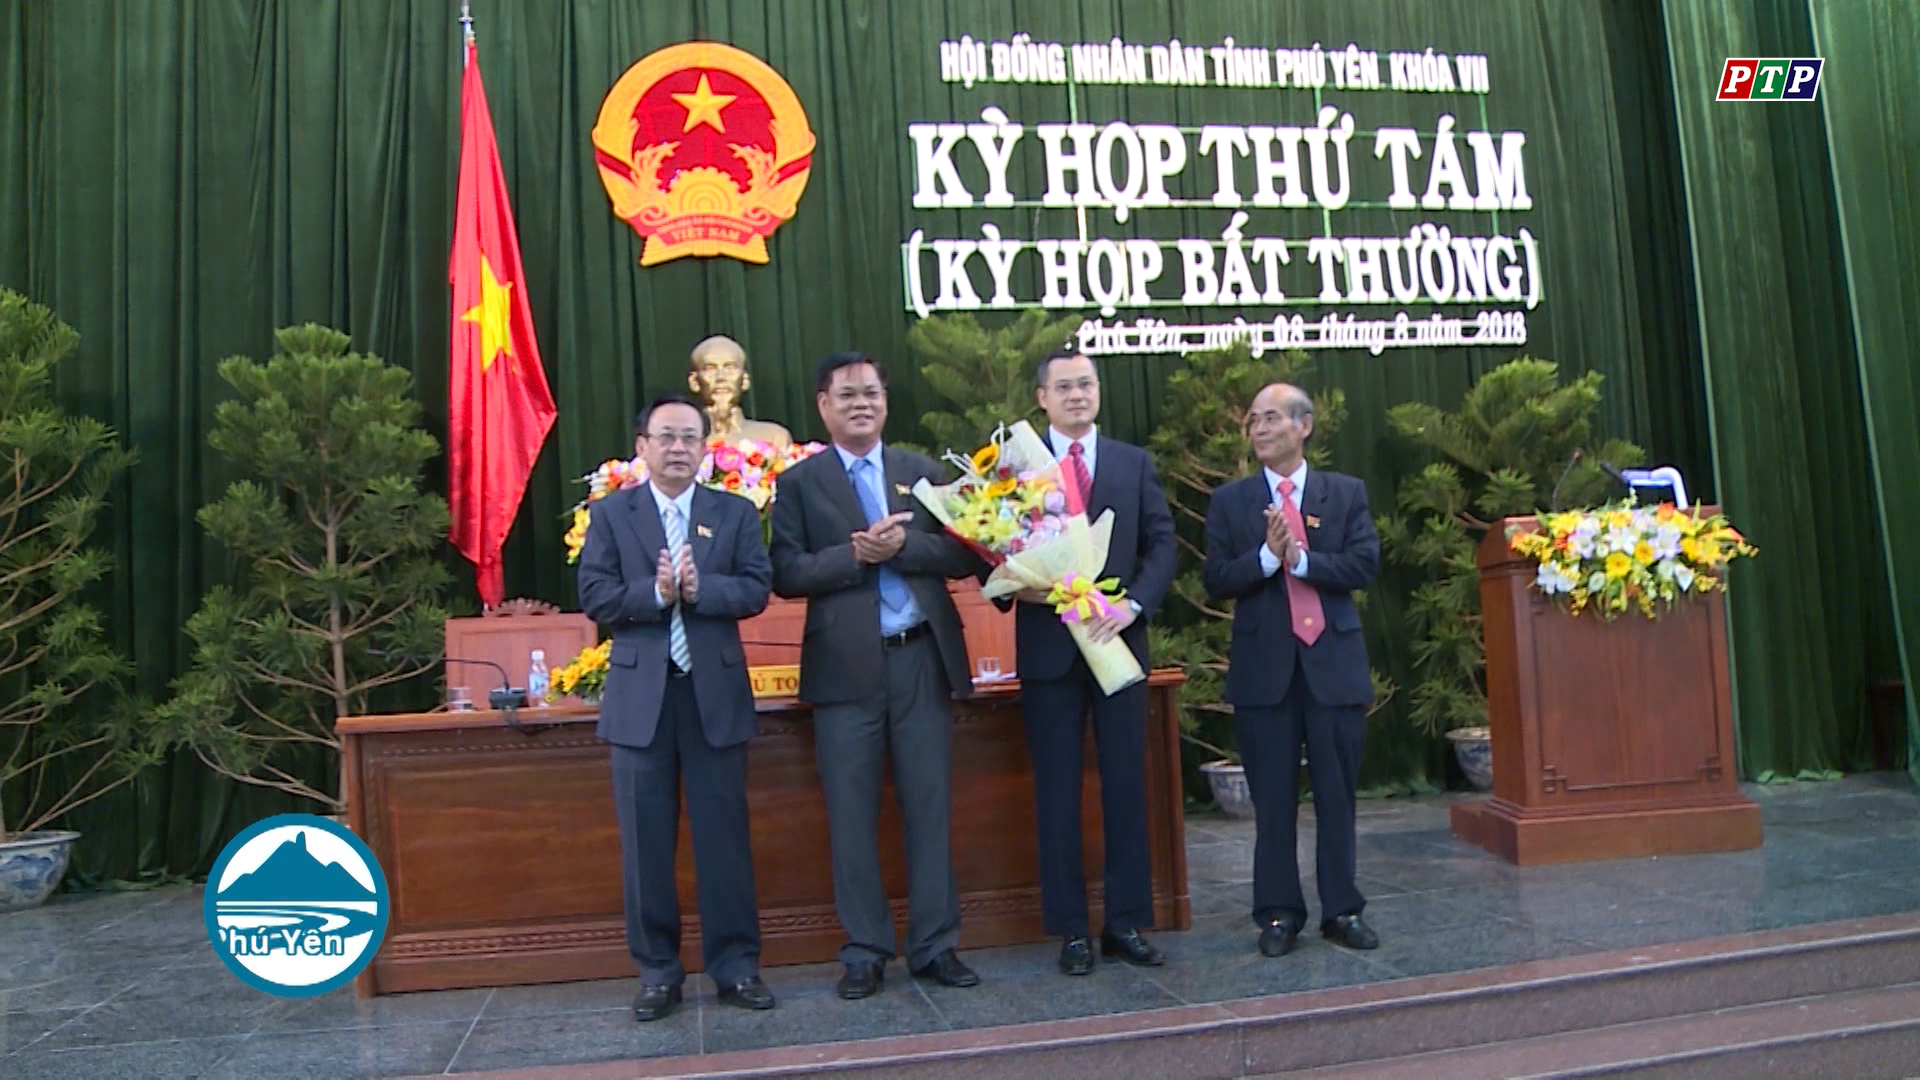 Đồng chí Phạm Đại Dương, Phó Bí thư Tỉnh ủy được bầu giữ chức Chủ tịch UBND tỉnh